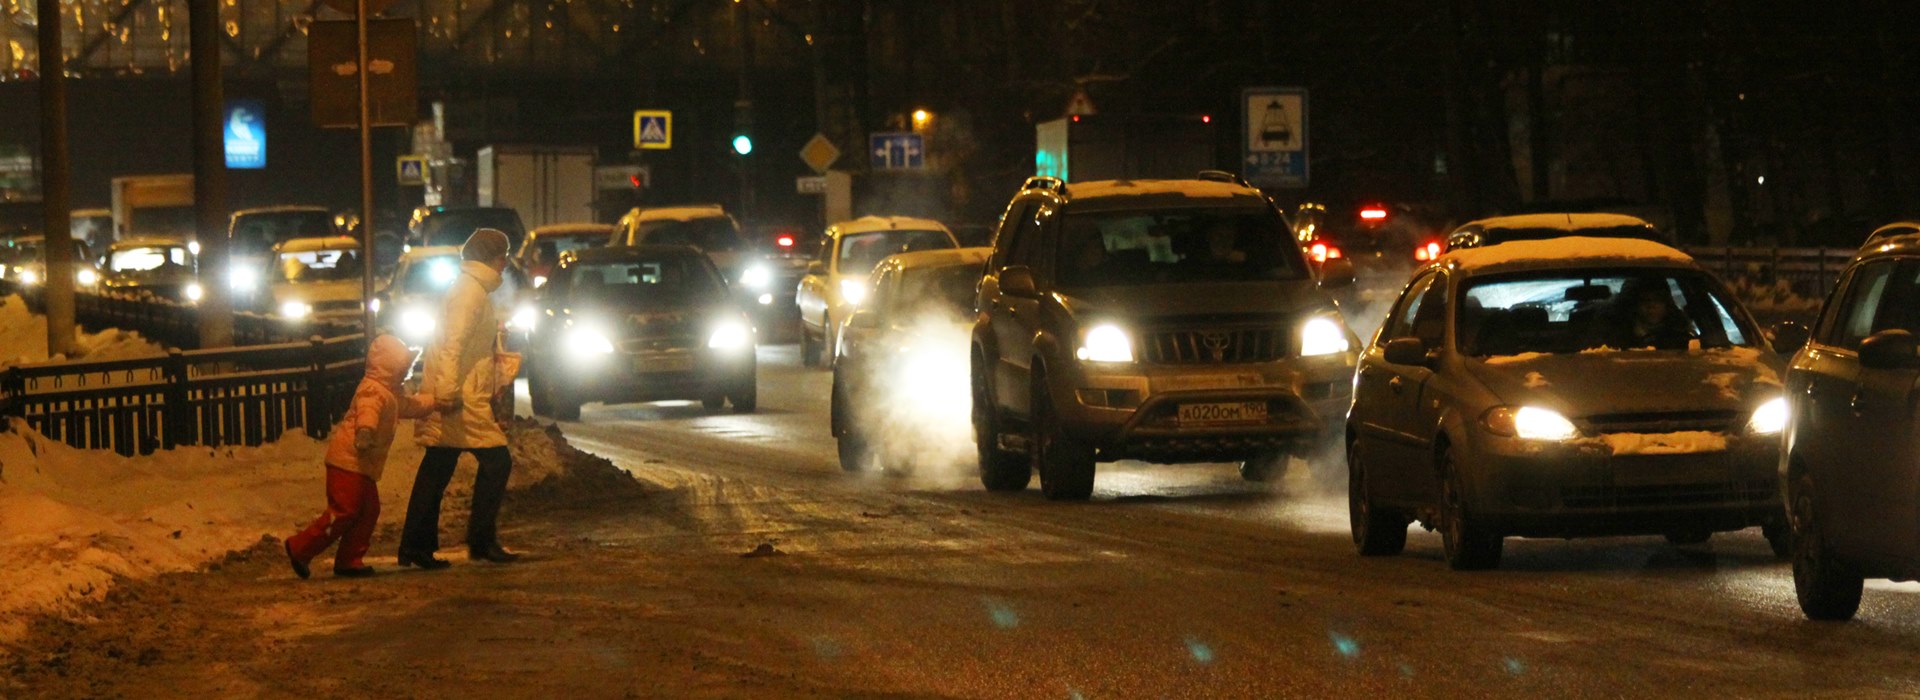 Безопасность на дороге в темное время суток: действия водителя и пешехода